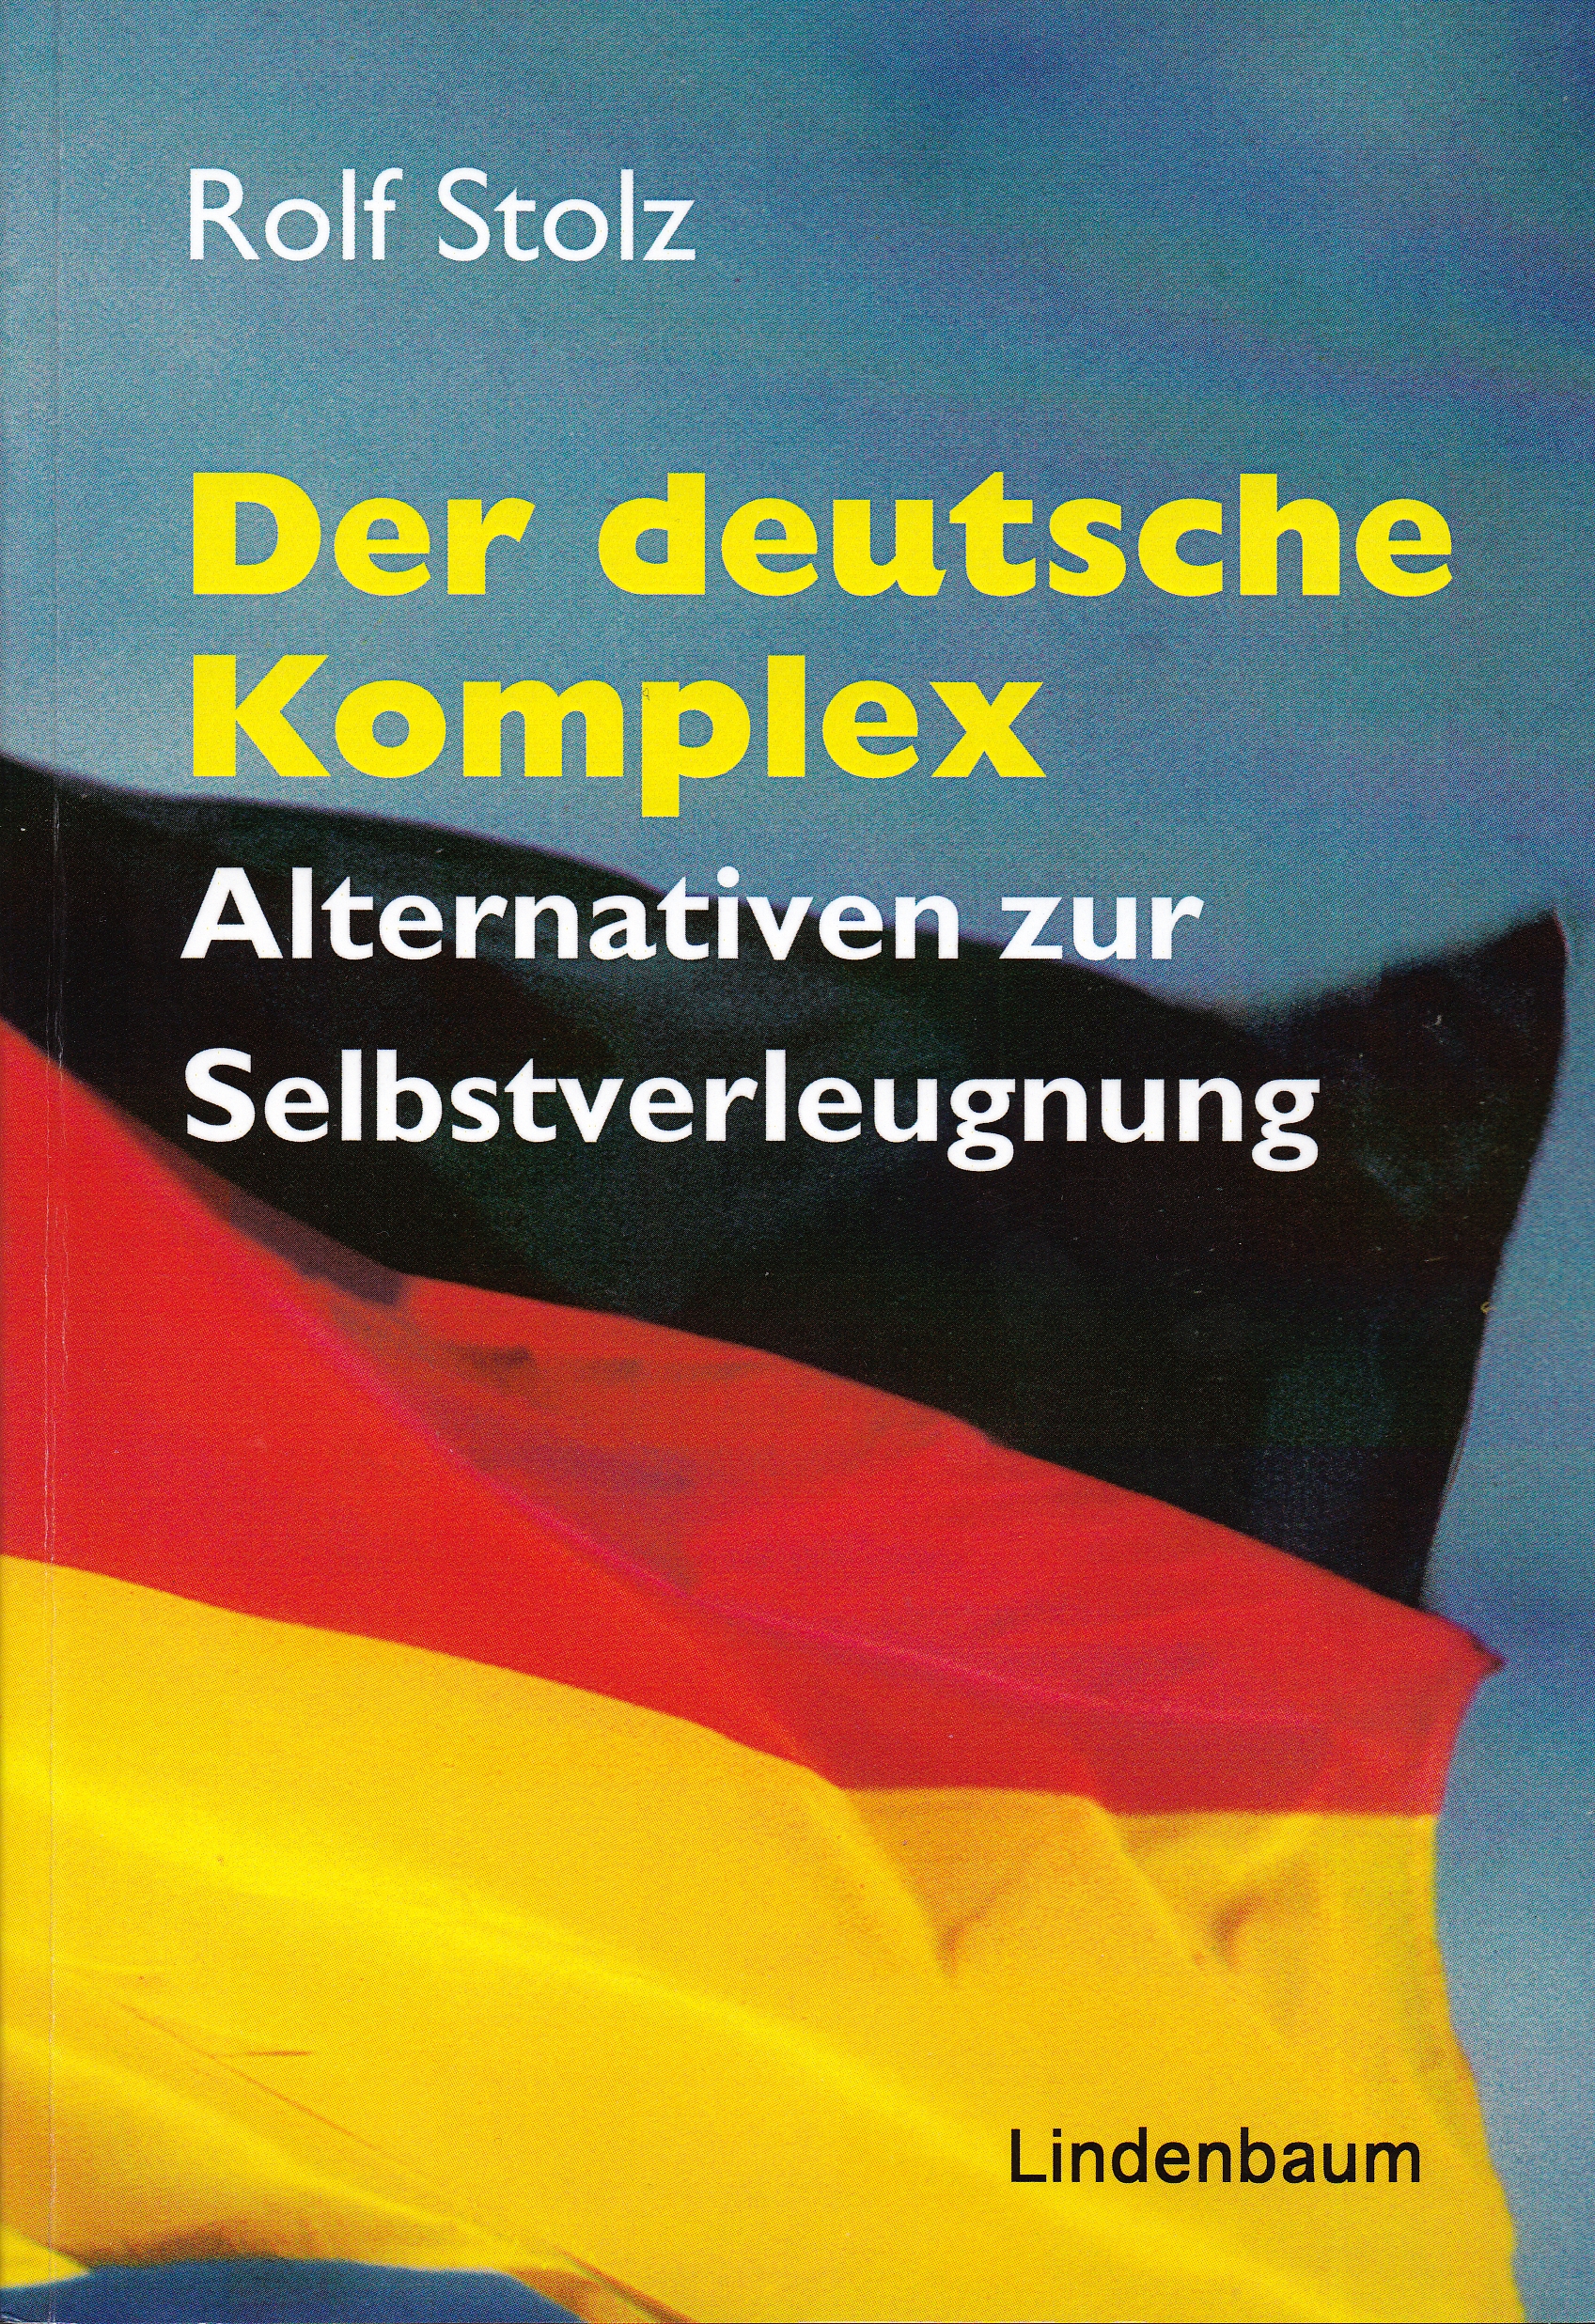 Der deutsche Komplex. Alternativen zur Selbstverleugnung